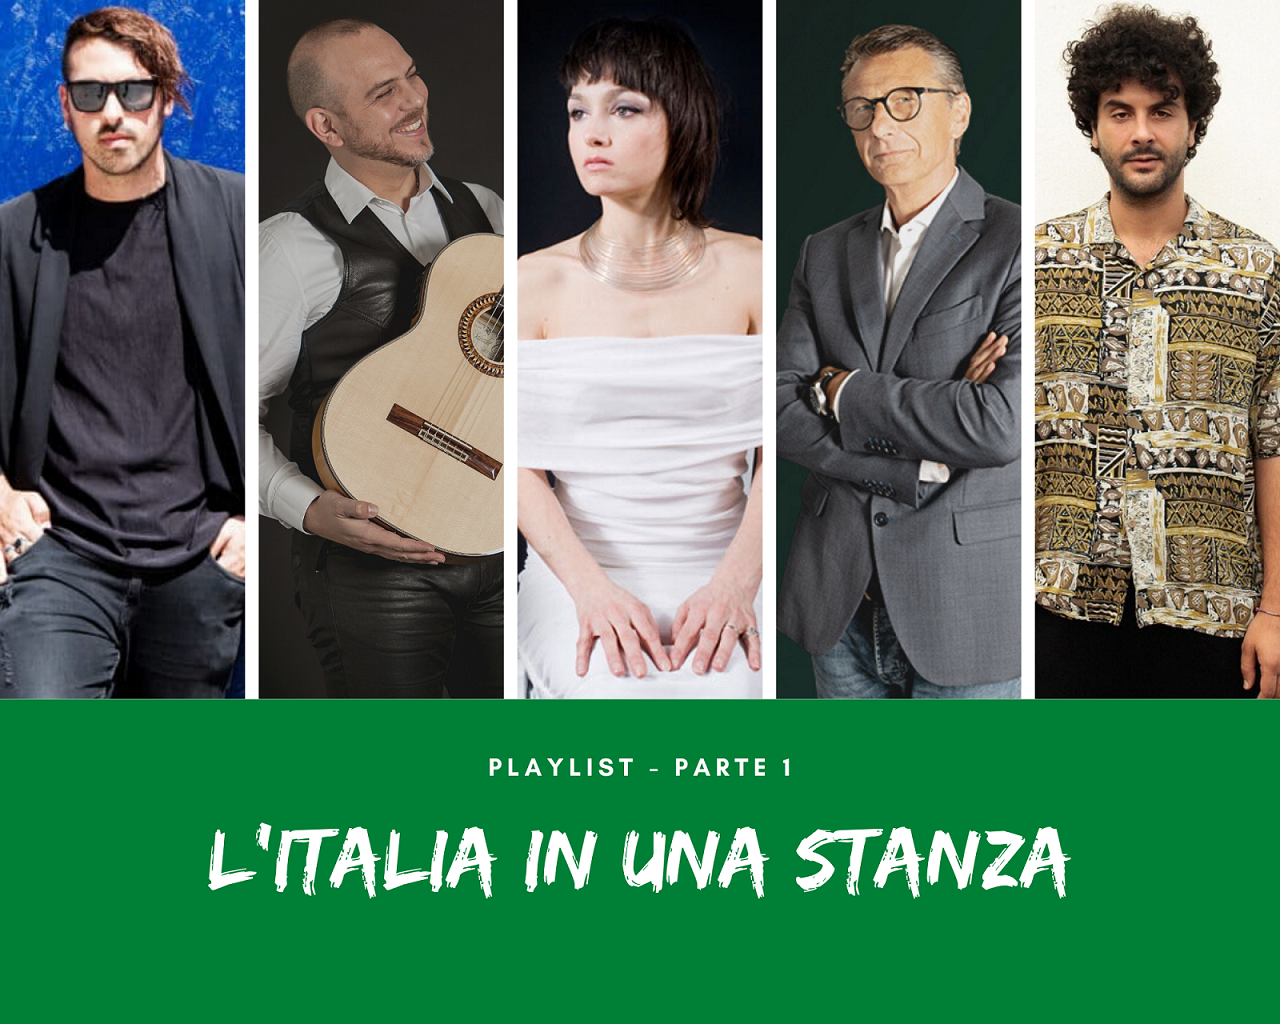 L’Italia in una stanza, ecco la playlist ‘Parte 1’ con gli artisti dell’evento